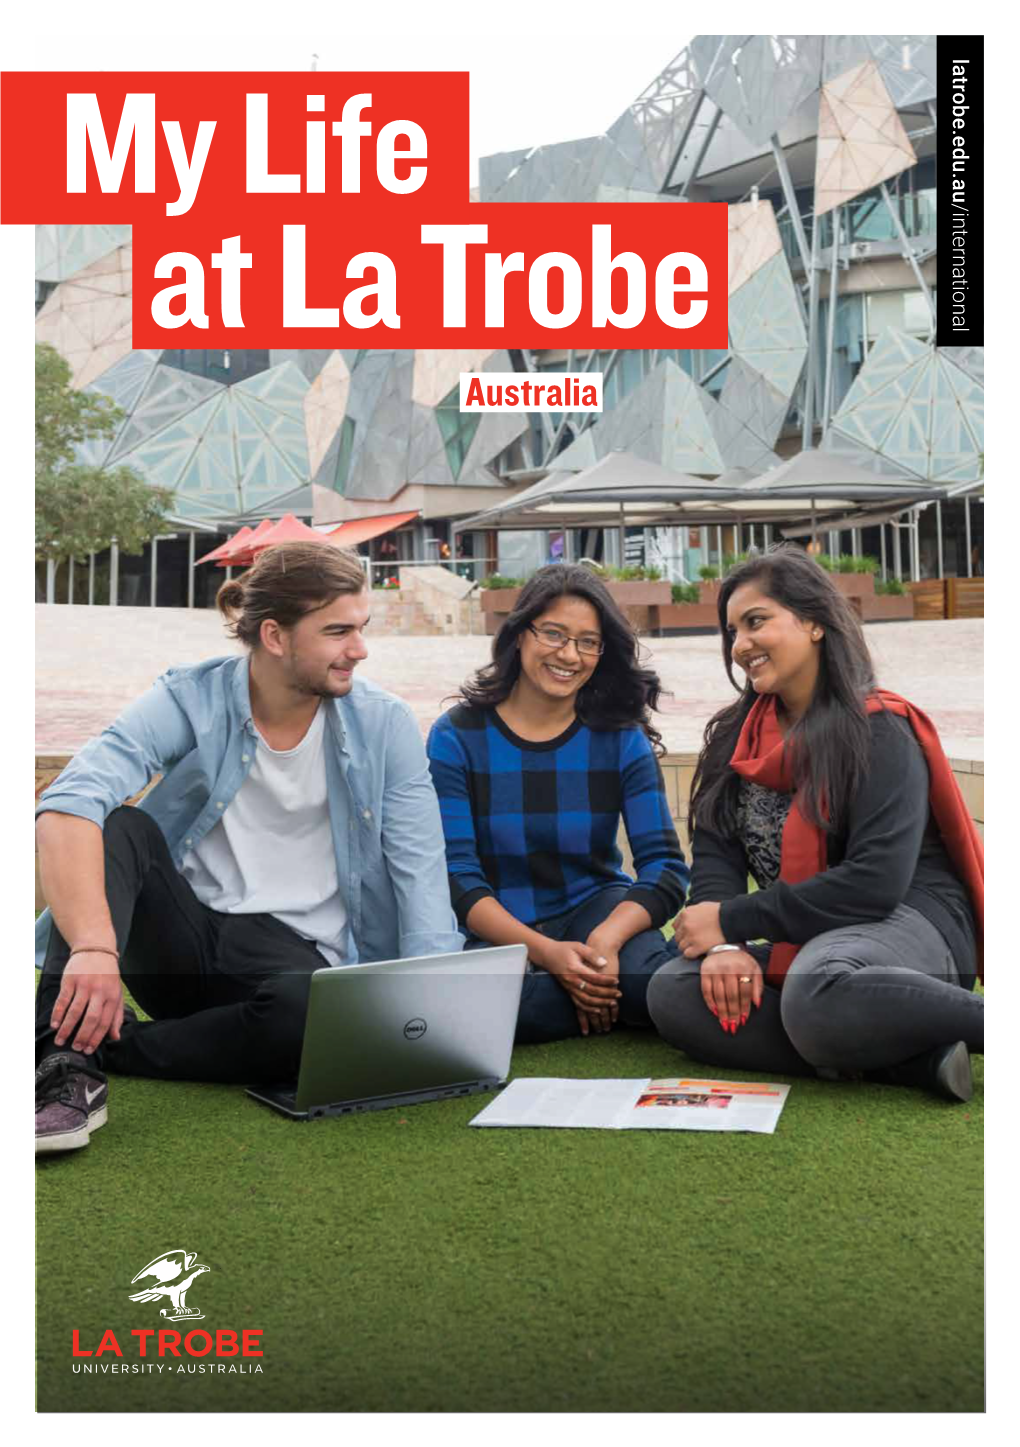 My Life at La Trobe Guide [PDF 6MB]